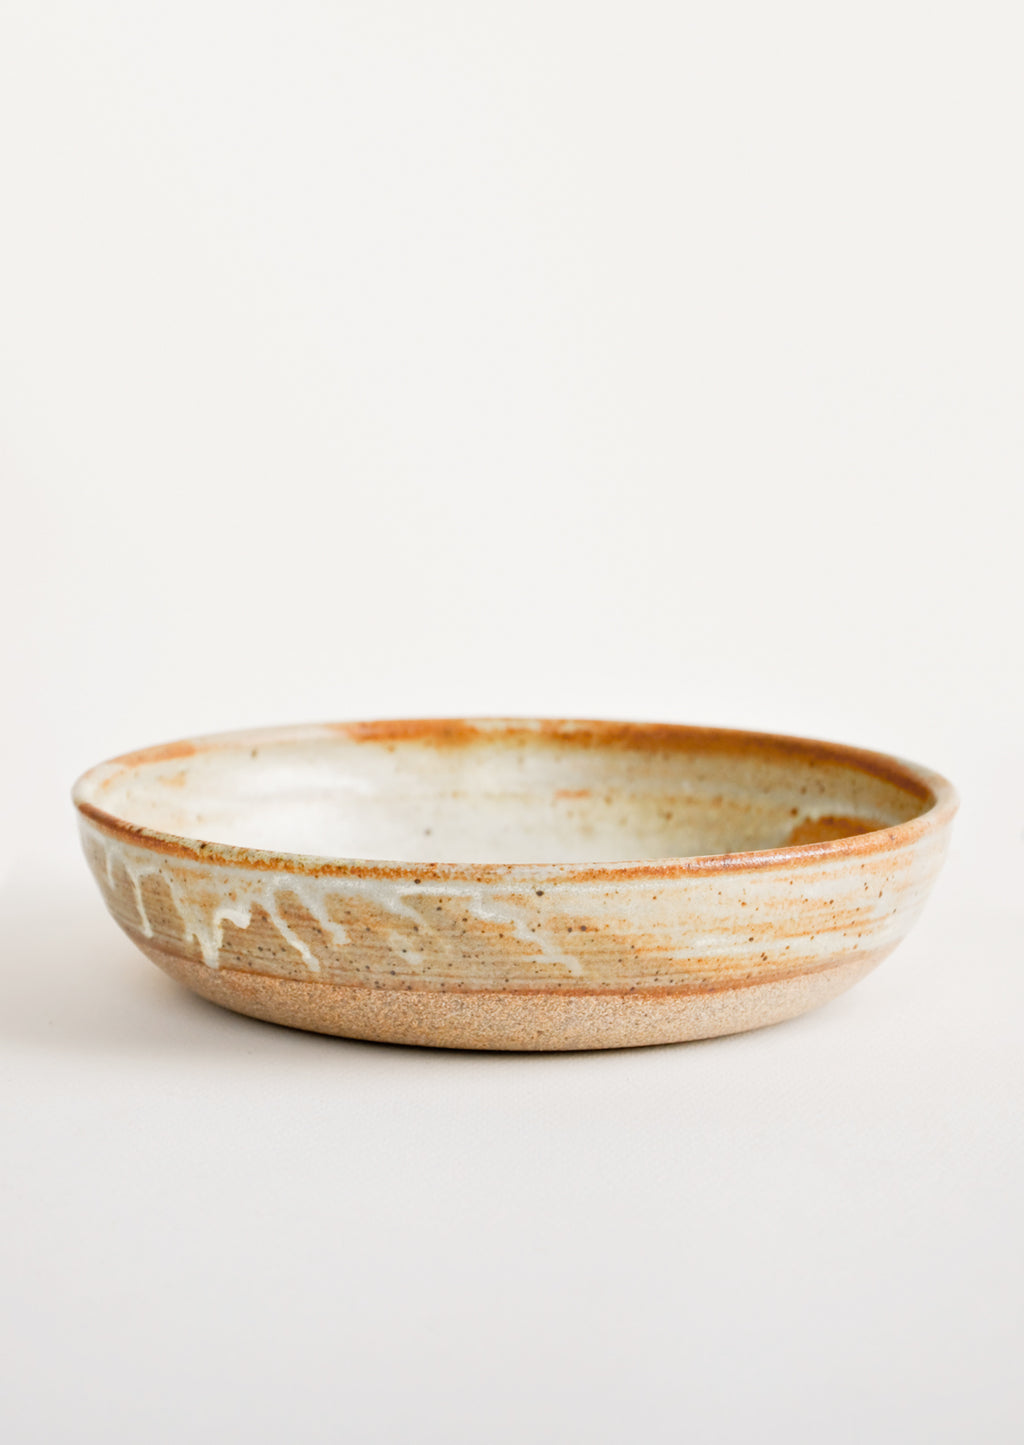 Matte Rusty Tan: Rustic Ceramic Dinner Bowl in Matte Rusty Tan - LEIF